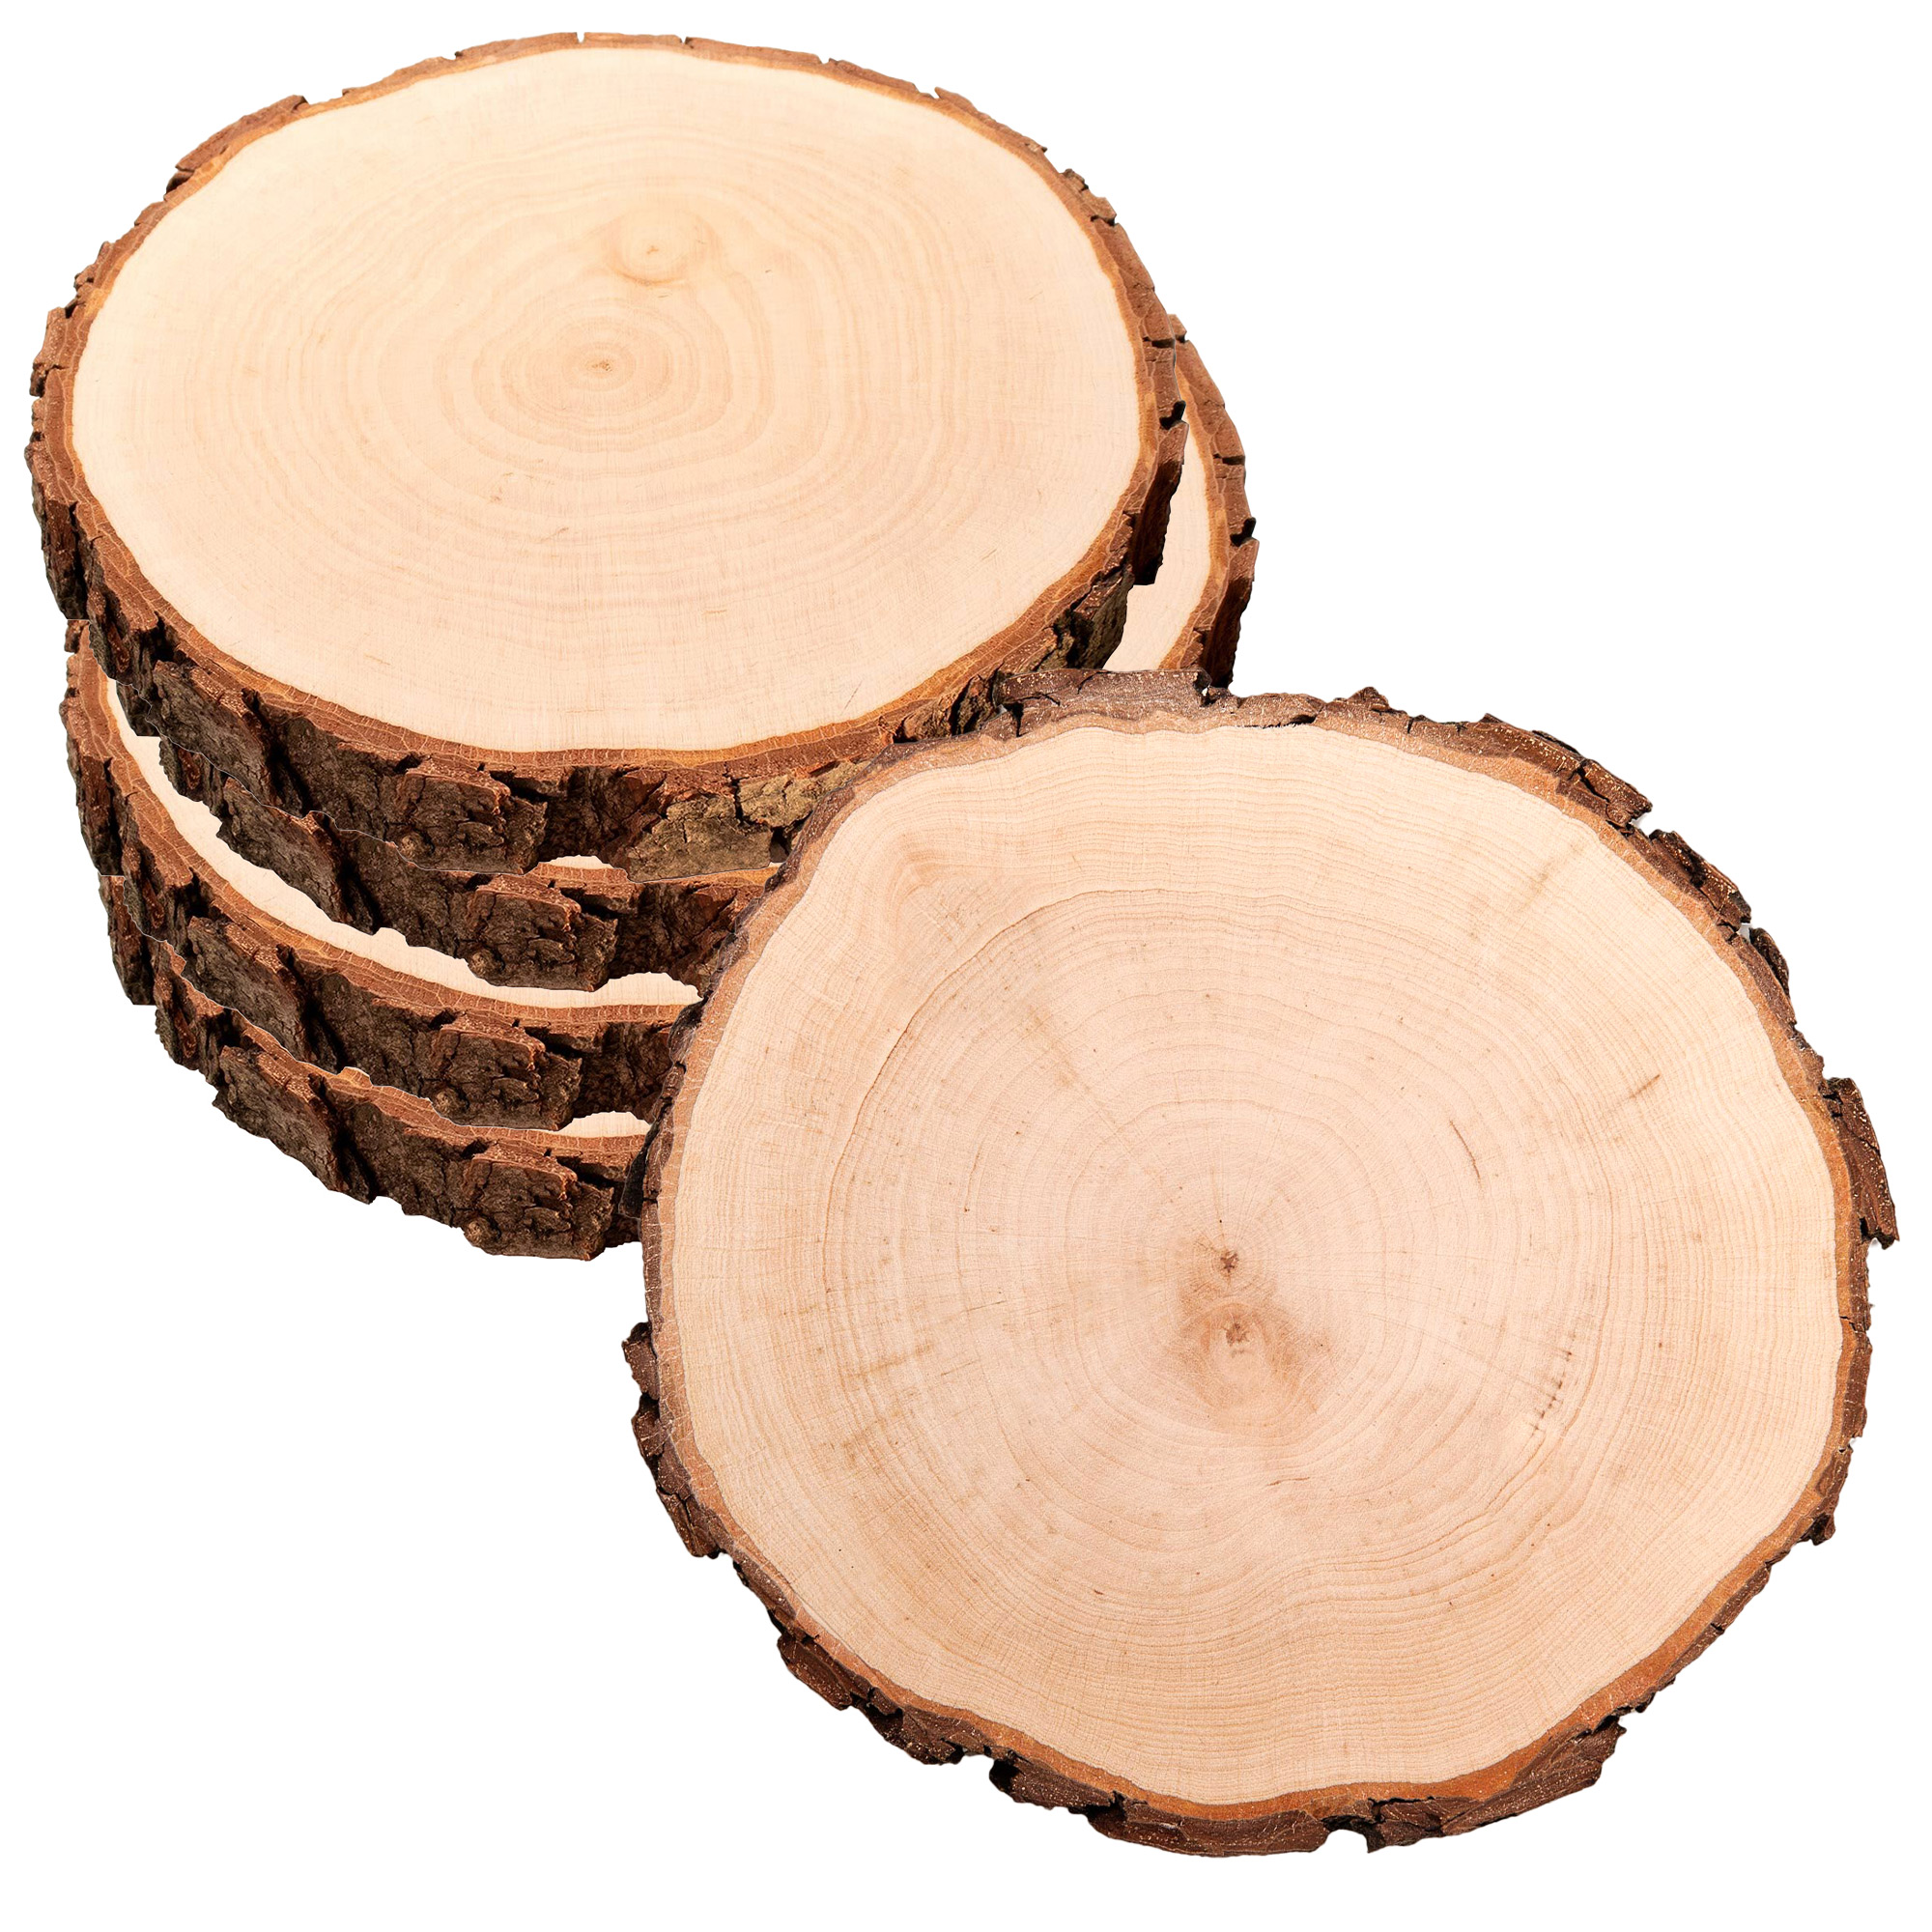 Holz Rundscheibe zum Verzieren, Holzscheibe im 5er Set als Untersetzer oder Tablett, Runde Natur Astscheiben als Holzdeko, DIY Holz Dekoscheiben